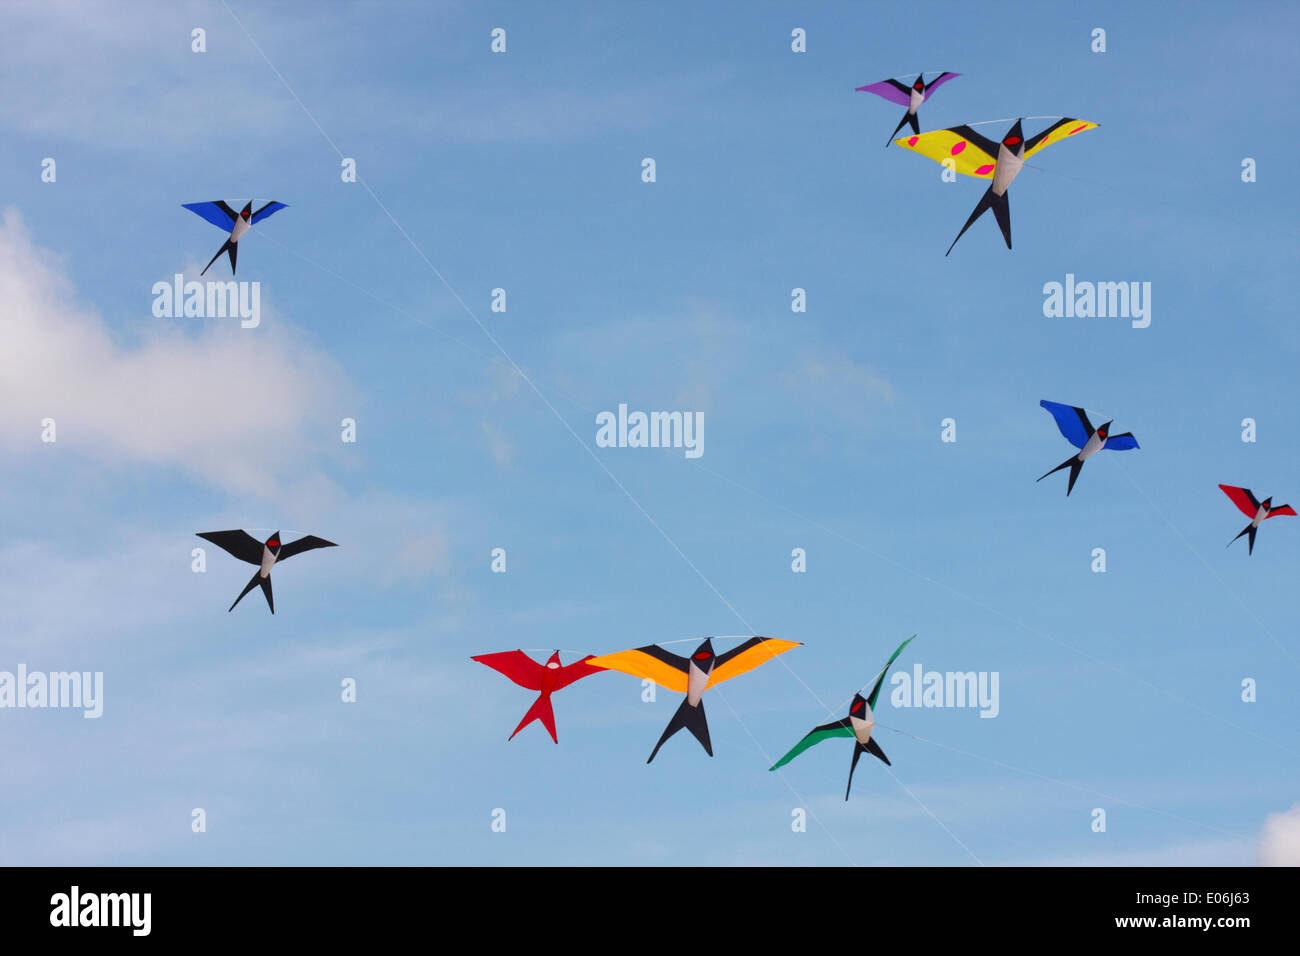 Weymouth, Dorset UK. 04.. Mai 2014. Beim Weymouth Kite Festival können Besucher die Vielfalt der bunten Drachen beobachten, die zu Musik am Himmel tanzen. Drachen in Form von Vögeln, die am blauen Himmel fliegen. Kredit: Carolyn Jenkins/Alamy Live News Stockfoto